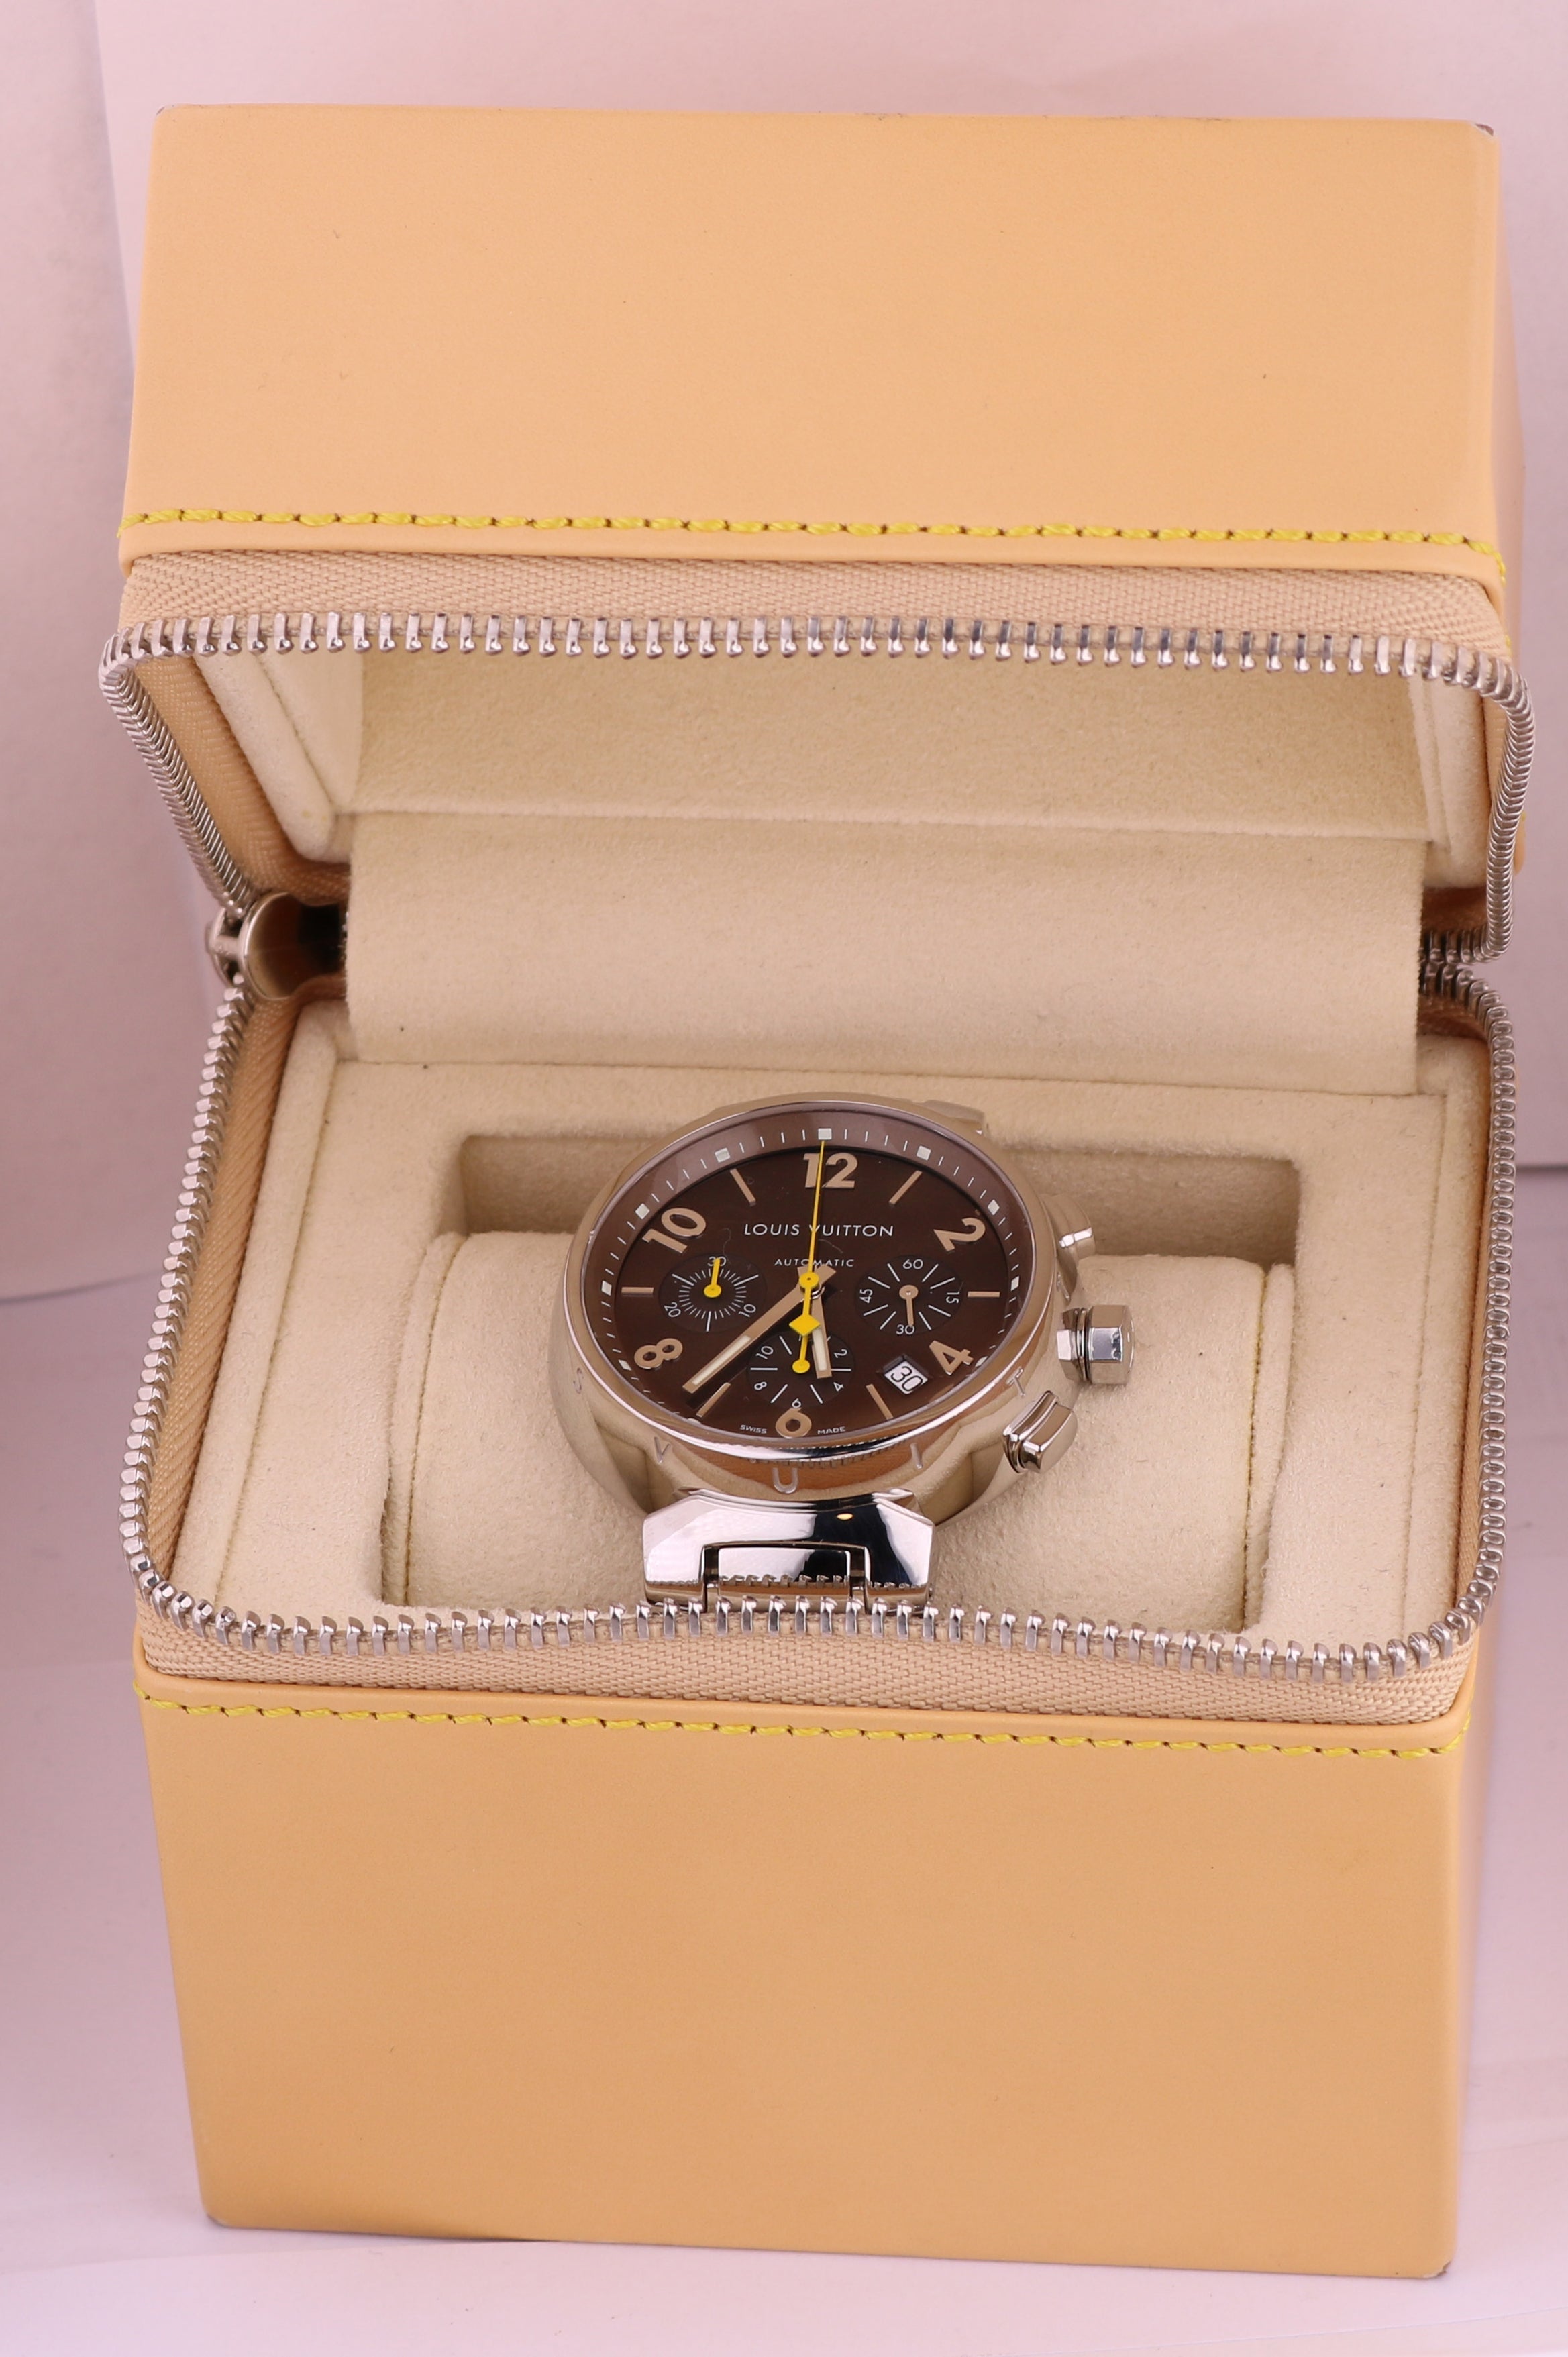 Pre-owned Louis Vuitton Tambour Quartz Brown Dial Men's Watch Q1111, Quartz Movement, Rubber Strap, 39 mm Case in Brown / White